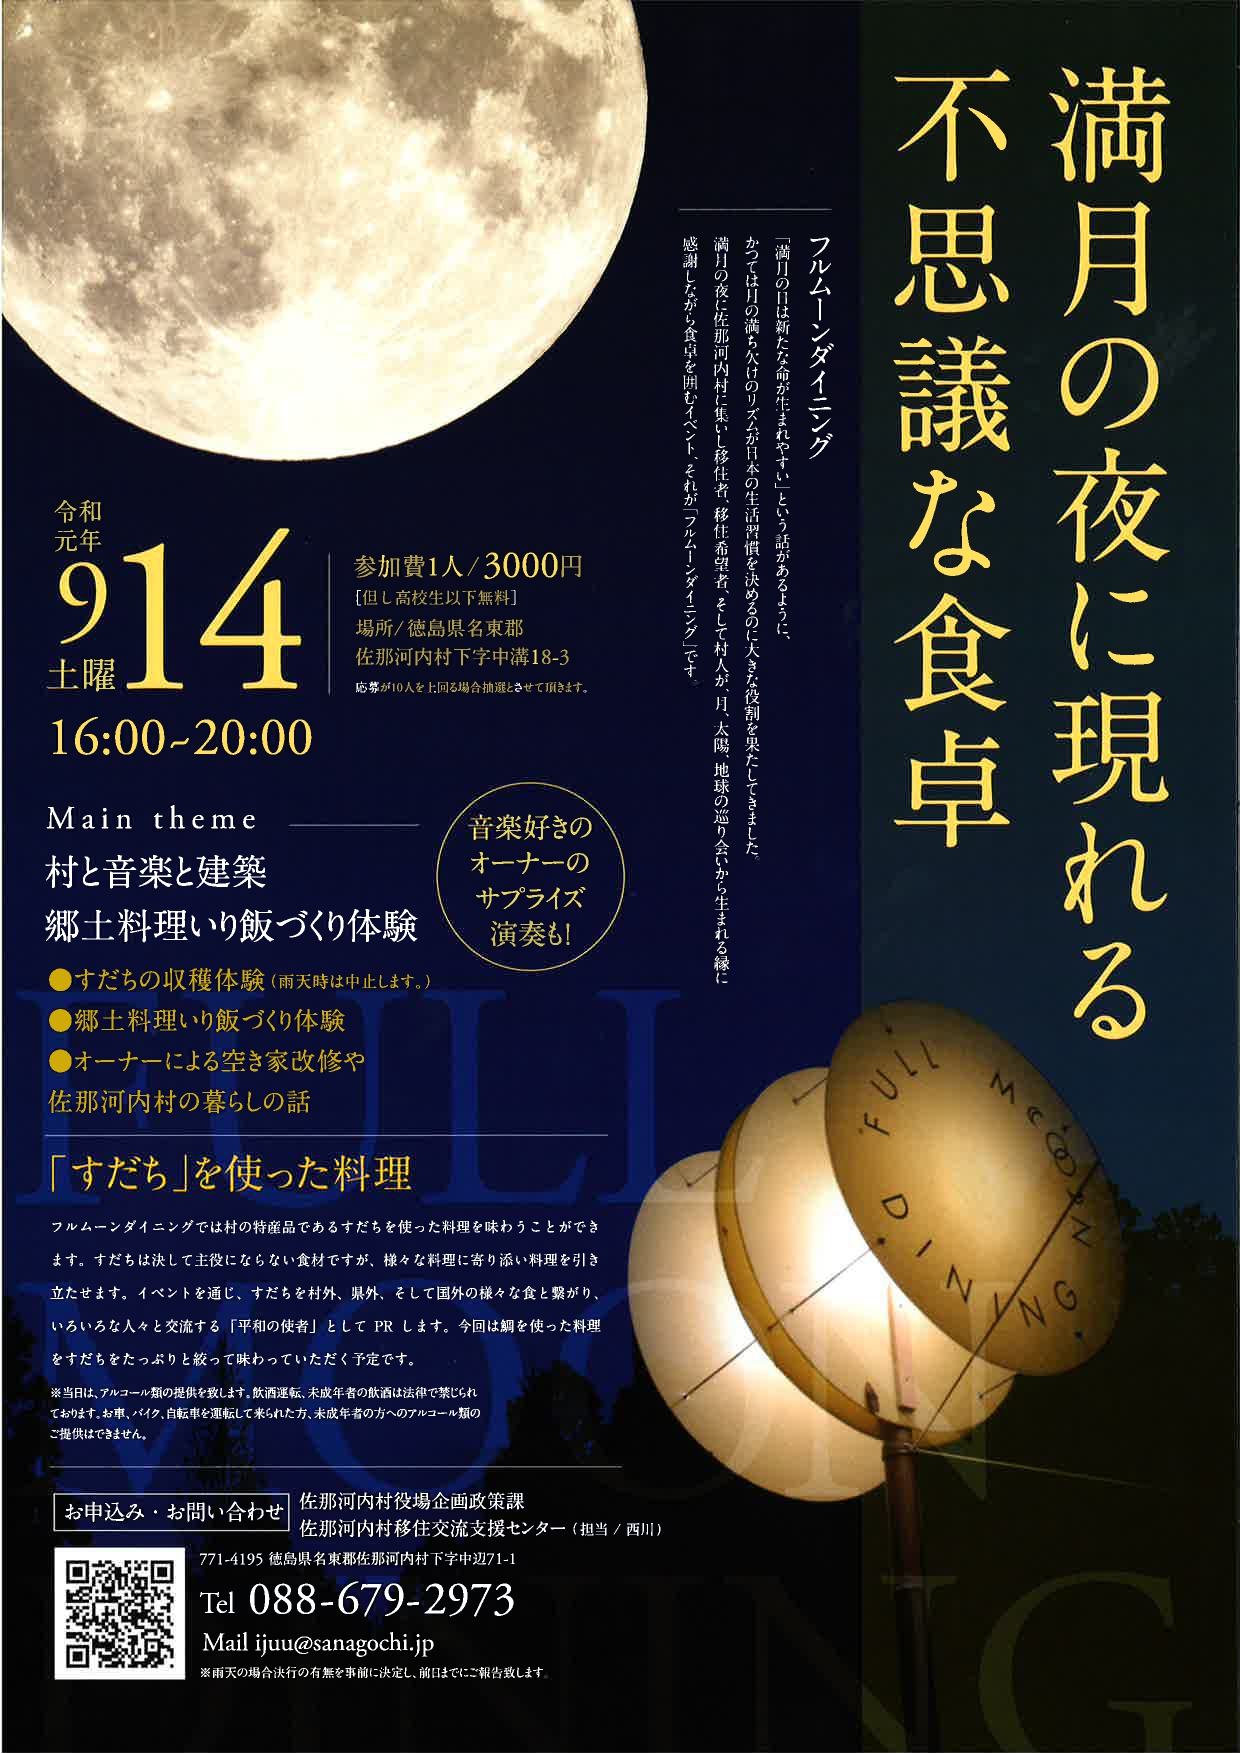 【佐那河内村】満月の夜に現れる不思議な食卓 | 移住関連イベント情報